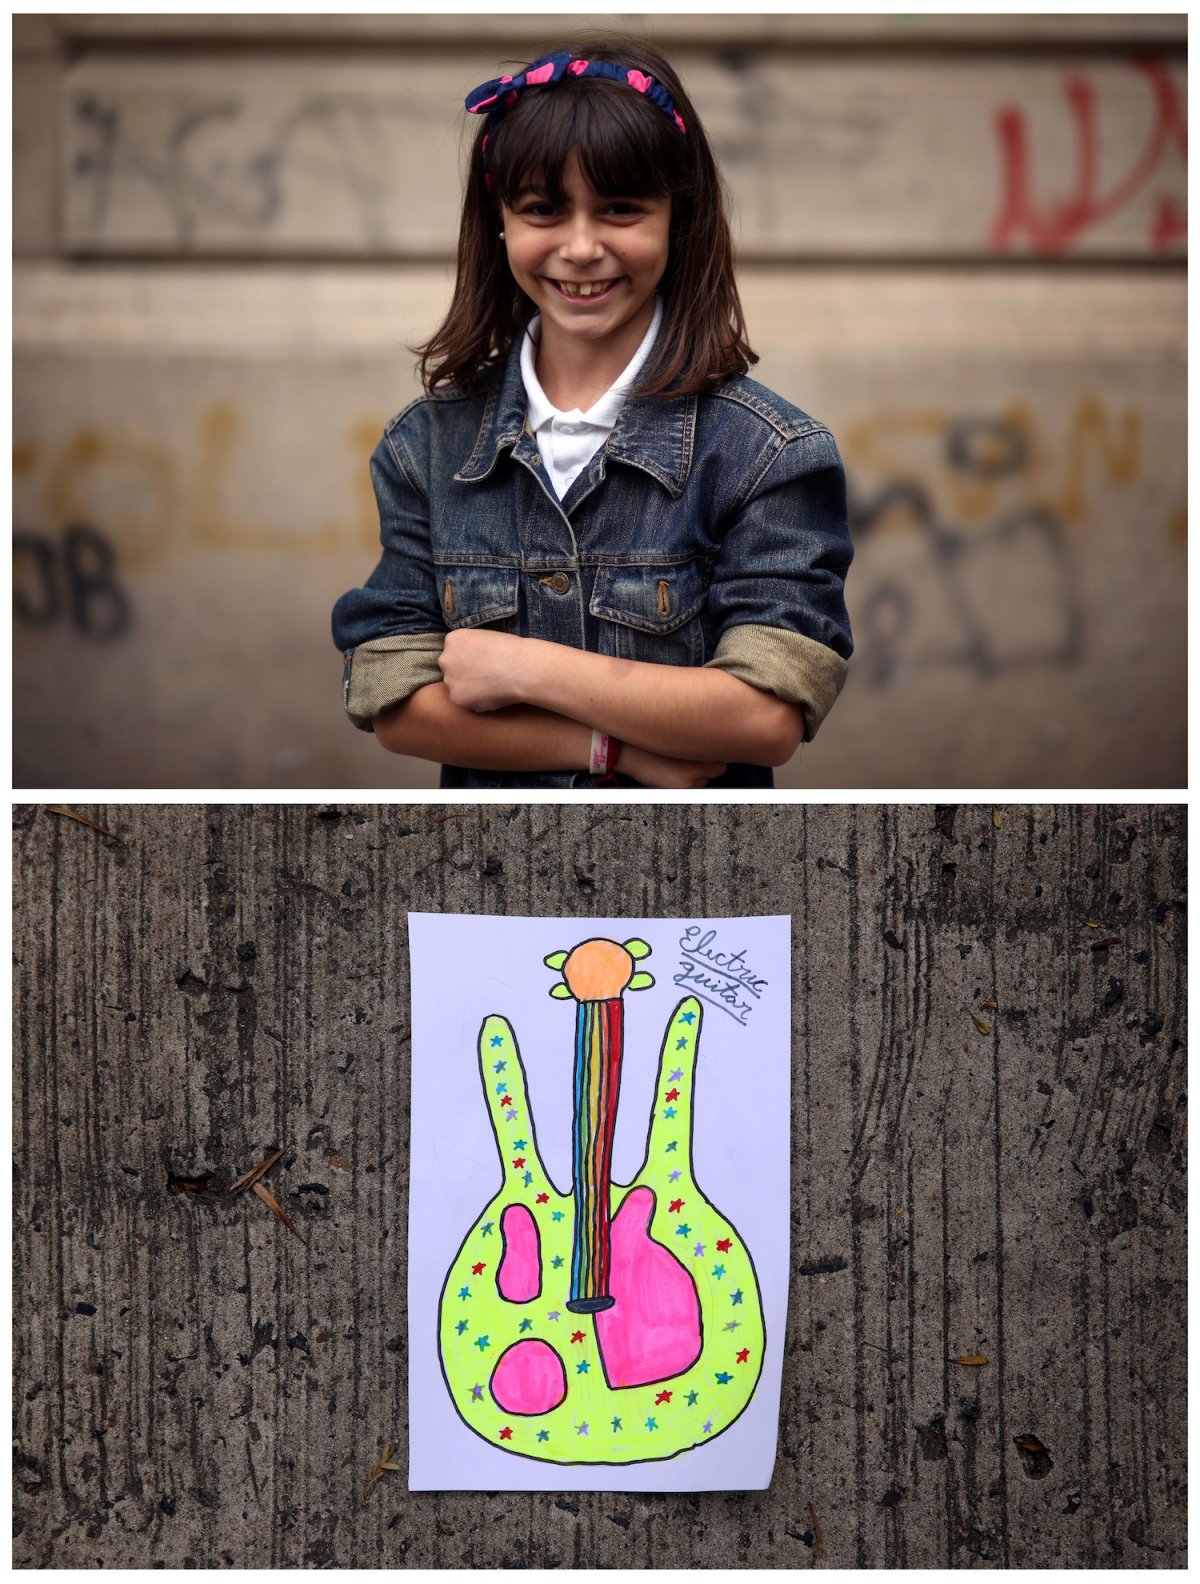 13. Морена из Буэнос-Айреса мечтает о гитаре, так как любит музыку.